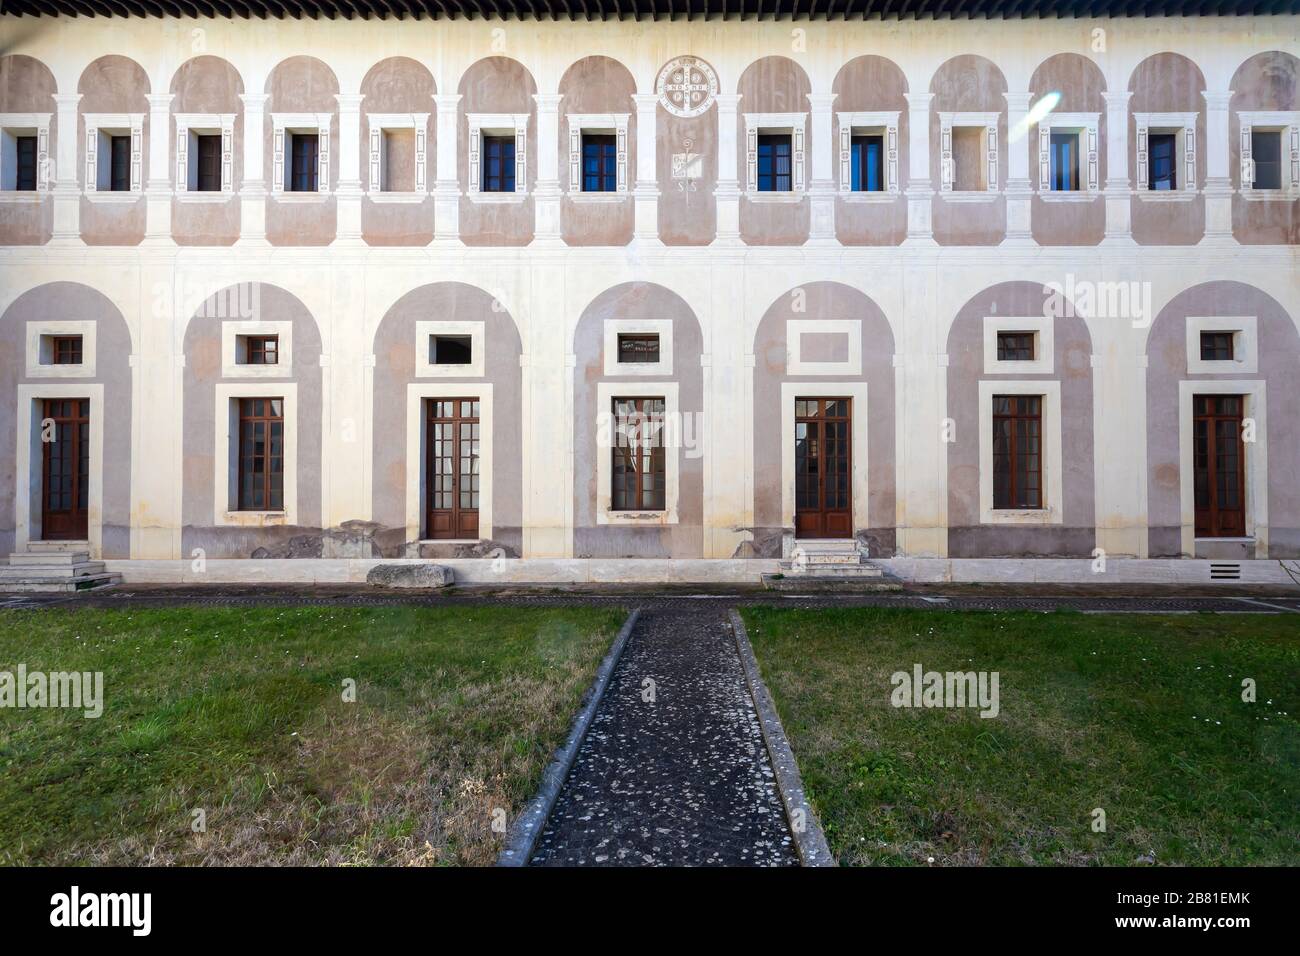 Subiaco, Italia - 23 febbraio 2020: Monastero di Santa Scolastica, facciata interna con l'antico chiostro rinascimentale. Foto Stock